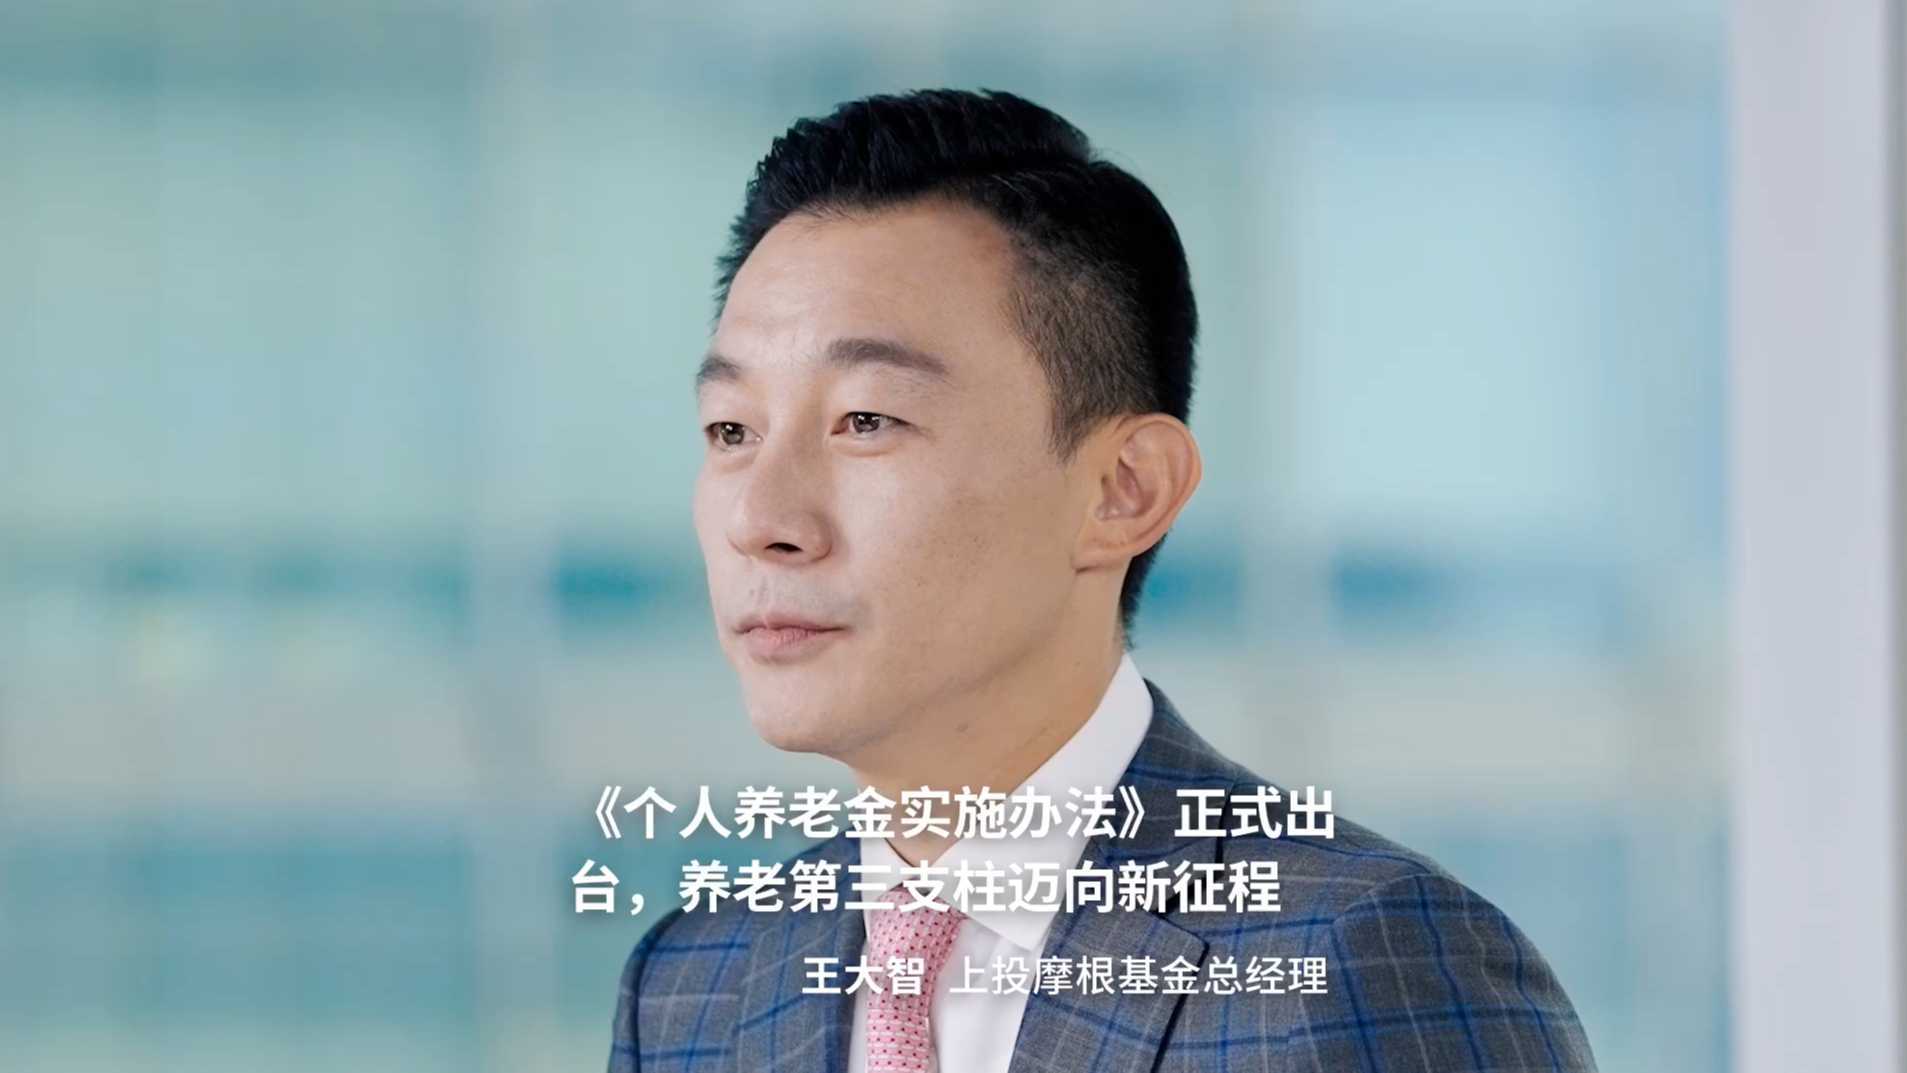 上投摩根 - CEO王大智访谈:中国个人养老